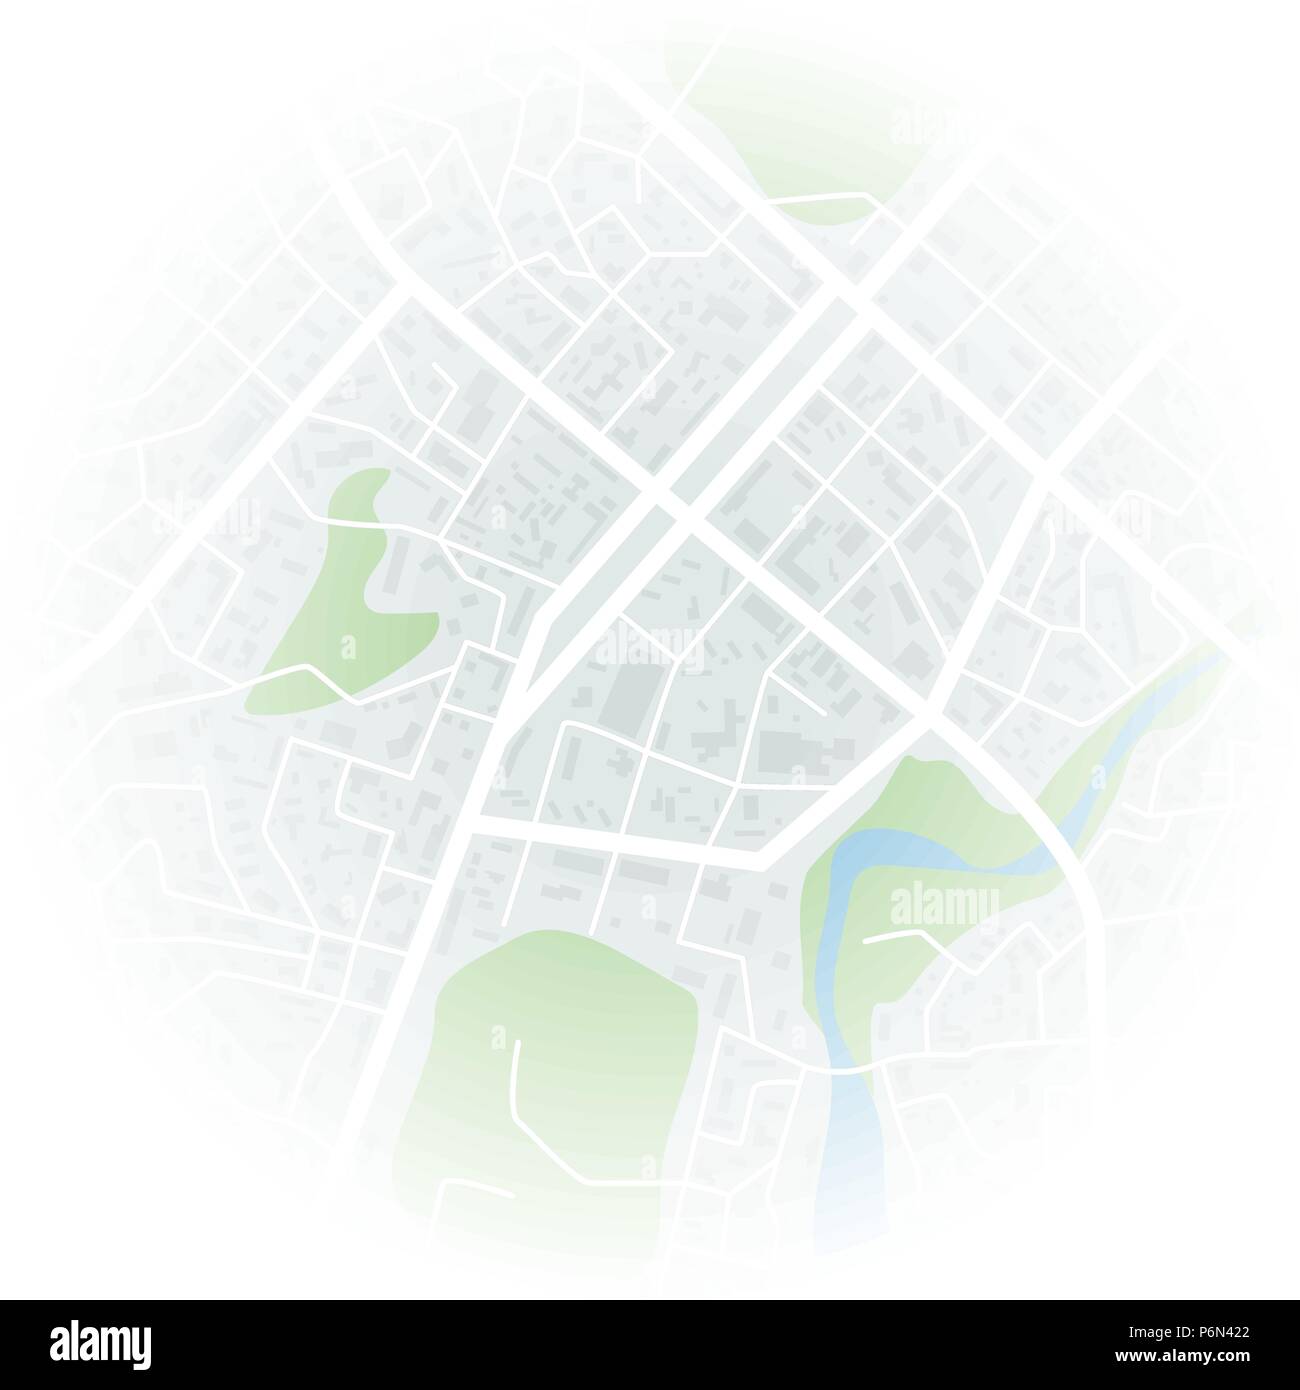 Abstrakte Stadtplan mit unscharfem Rand. Stadt Wohnviertel. Stadtteil Plan. Vector Illustration Stock Vektor